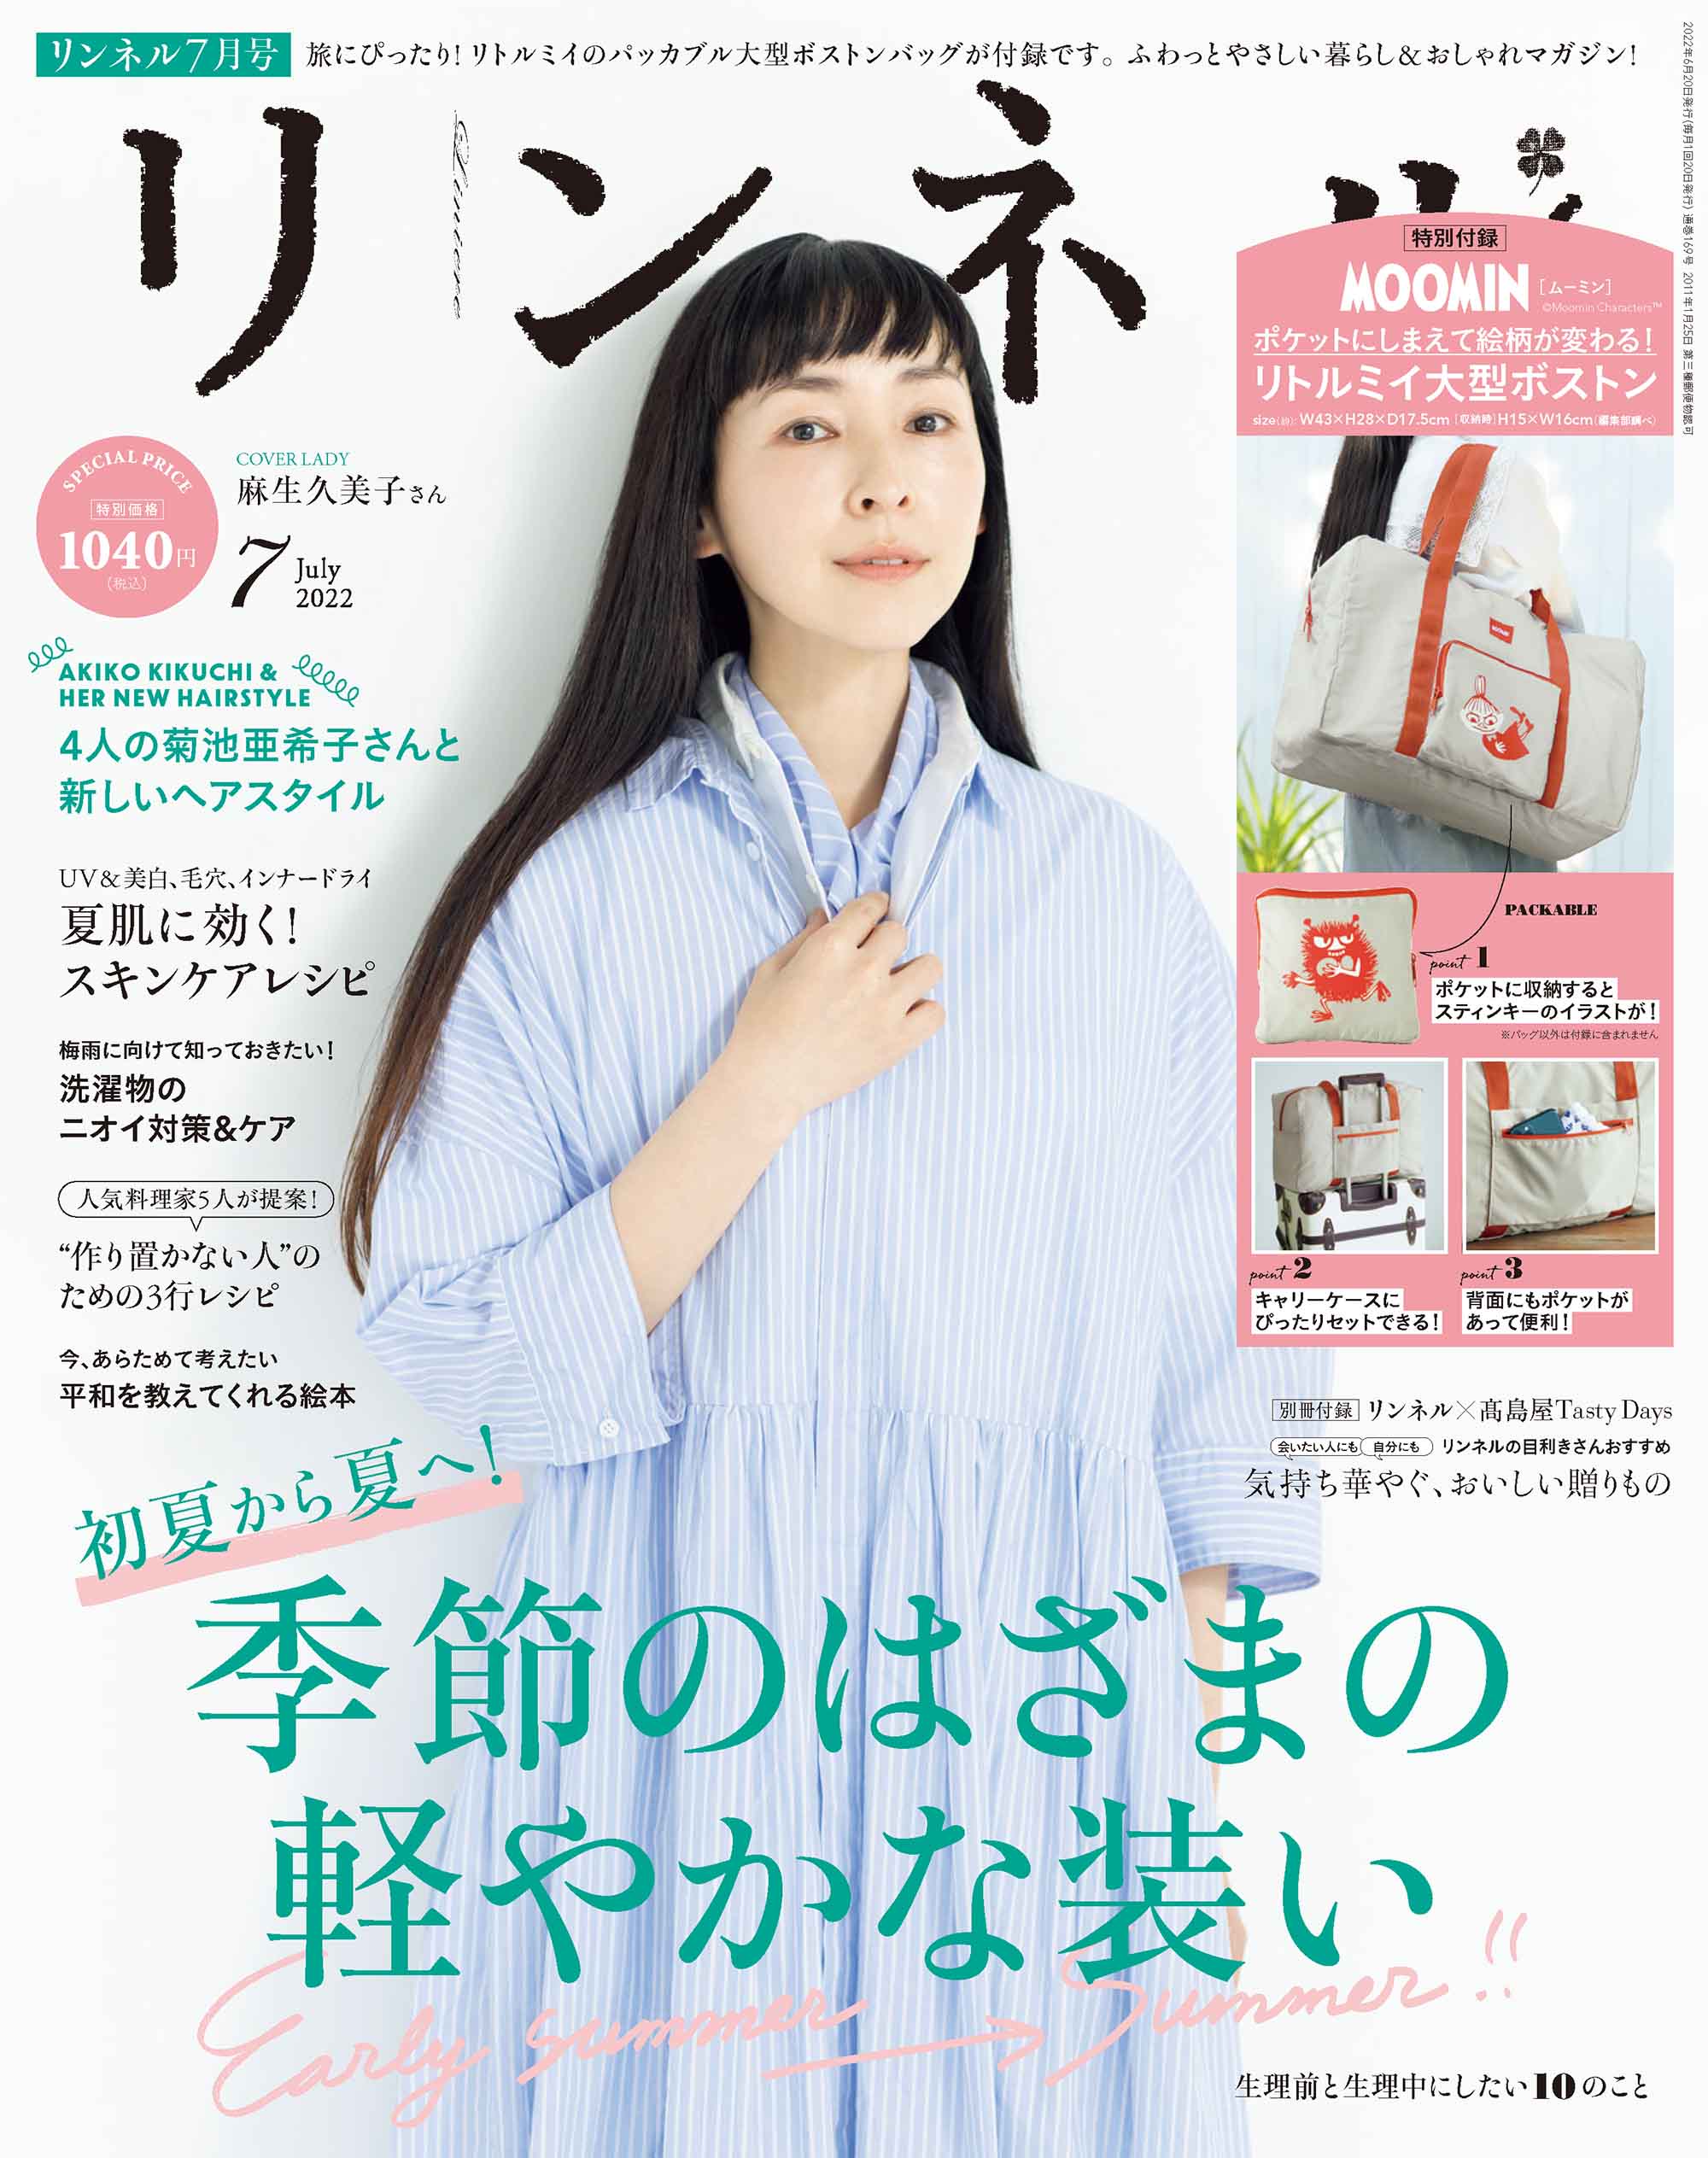 日本のファッション雑誌 ランキング発表 ファッション誌12年連続no 1 シェア３割超 株式会社 宝島社のプレスリリース